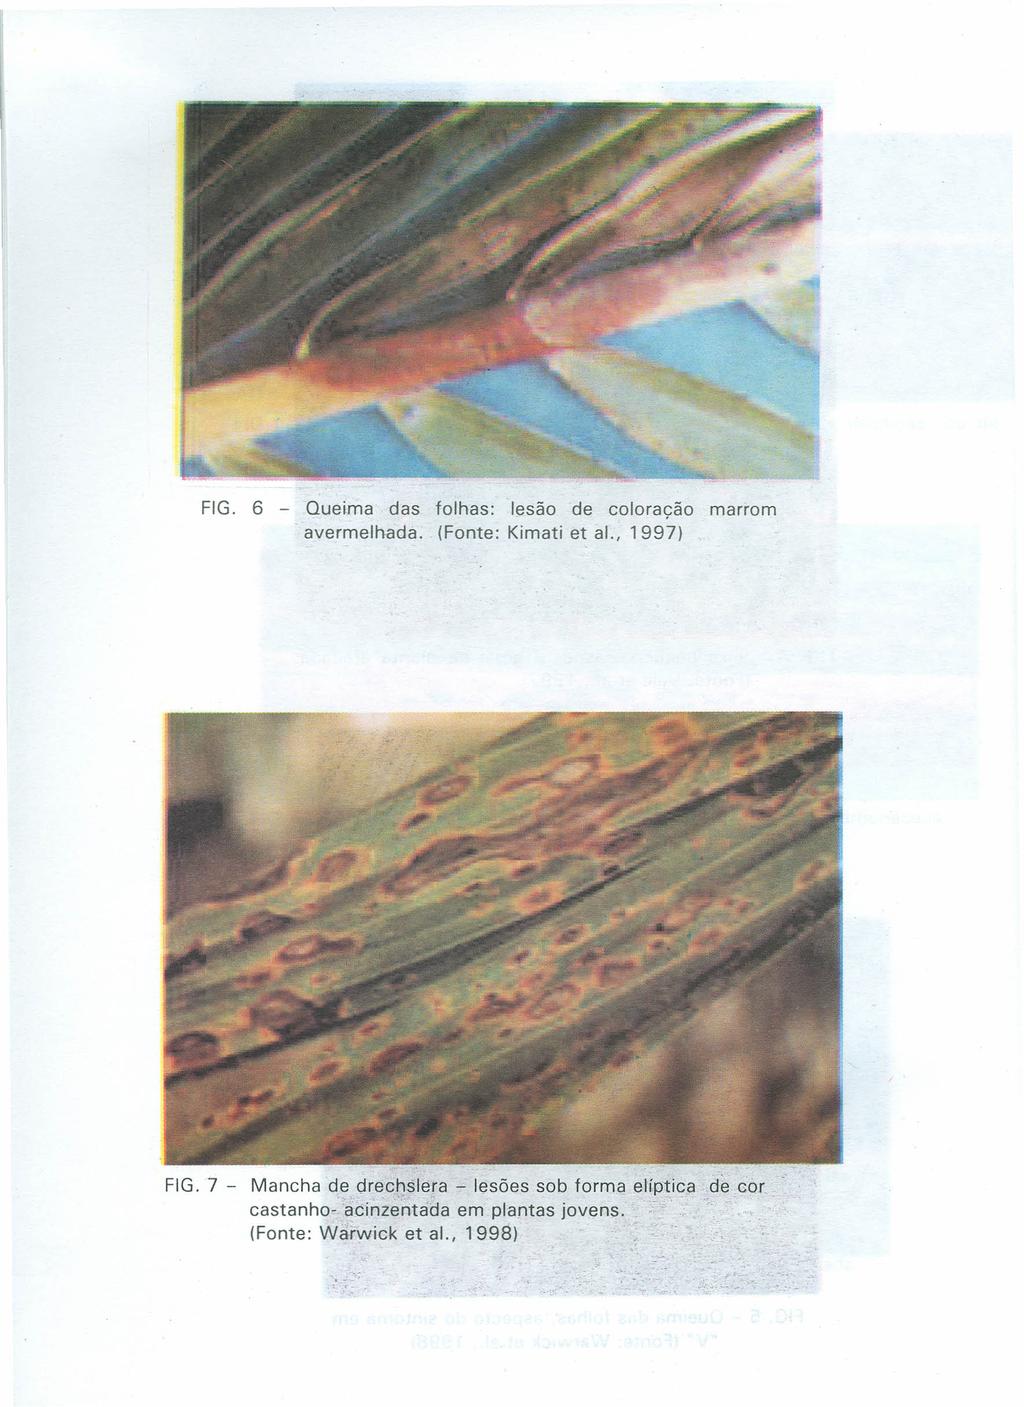 FIG. 6 - Queima das folhas: lesão de coloração marrom avermelhada. (Fonte: Kimati et ai., 1997) FIG.